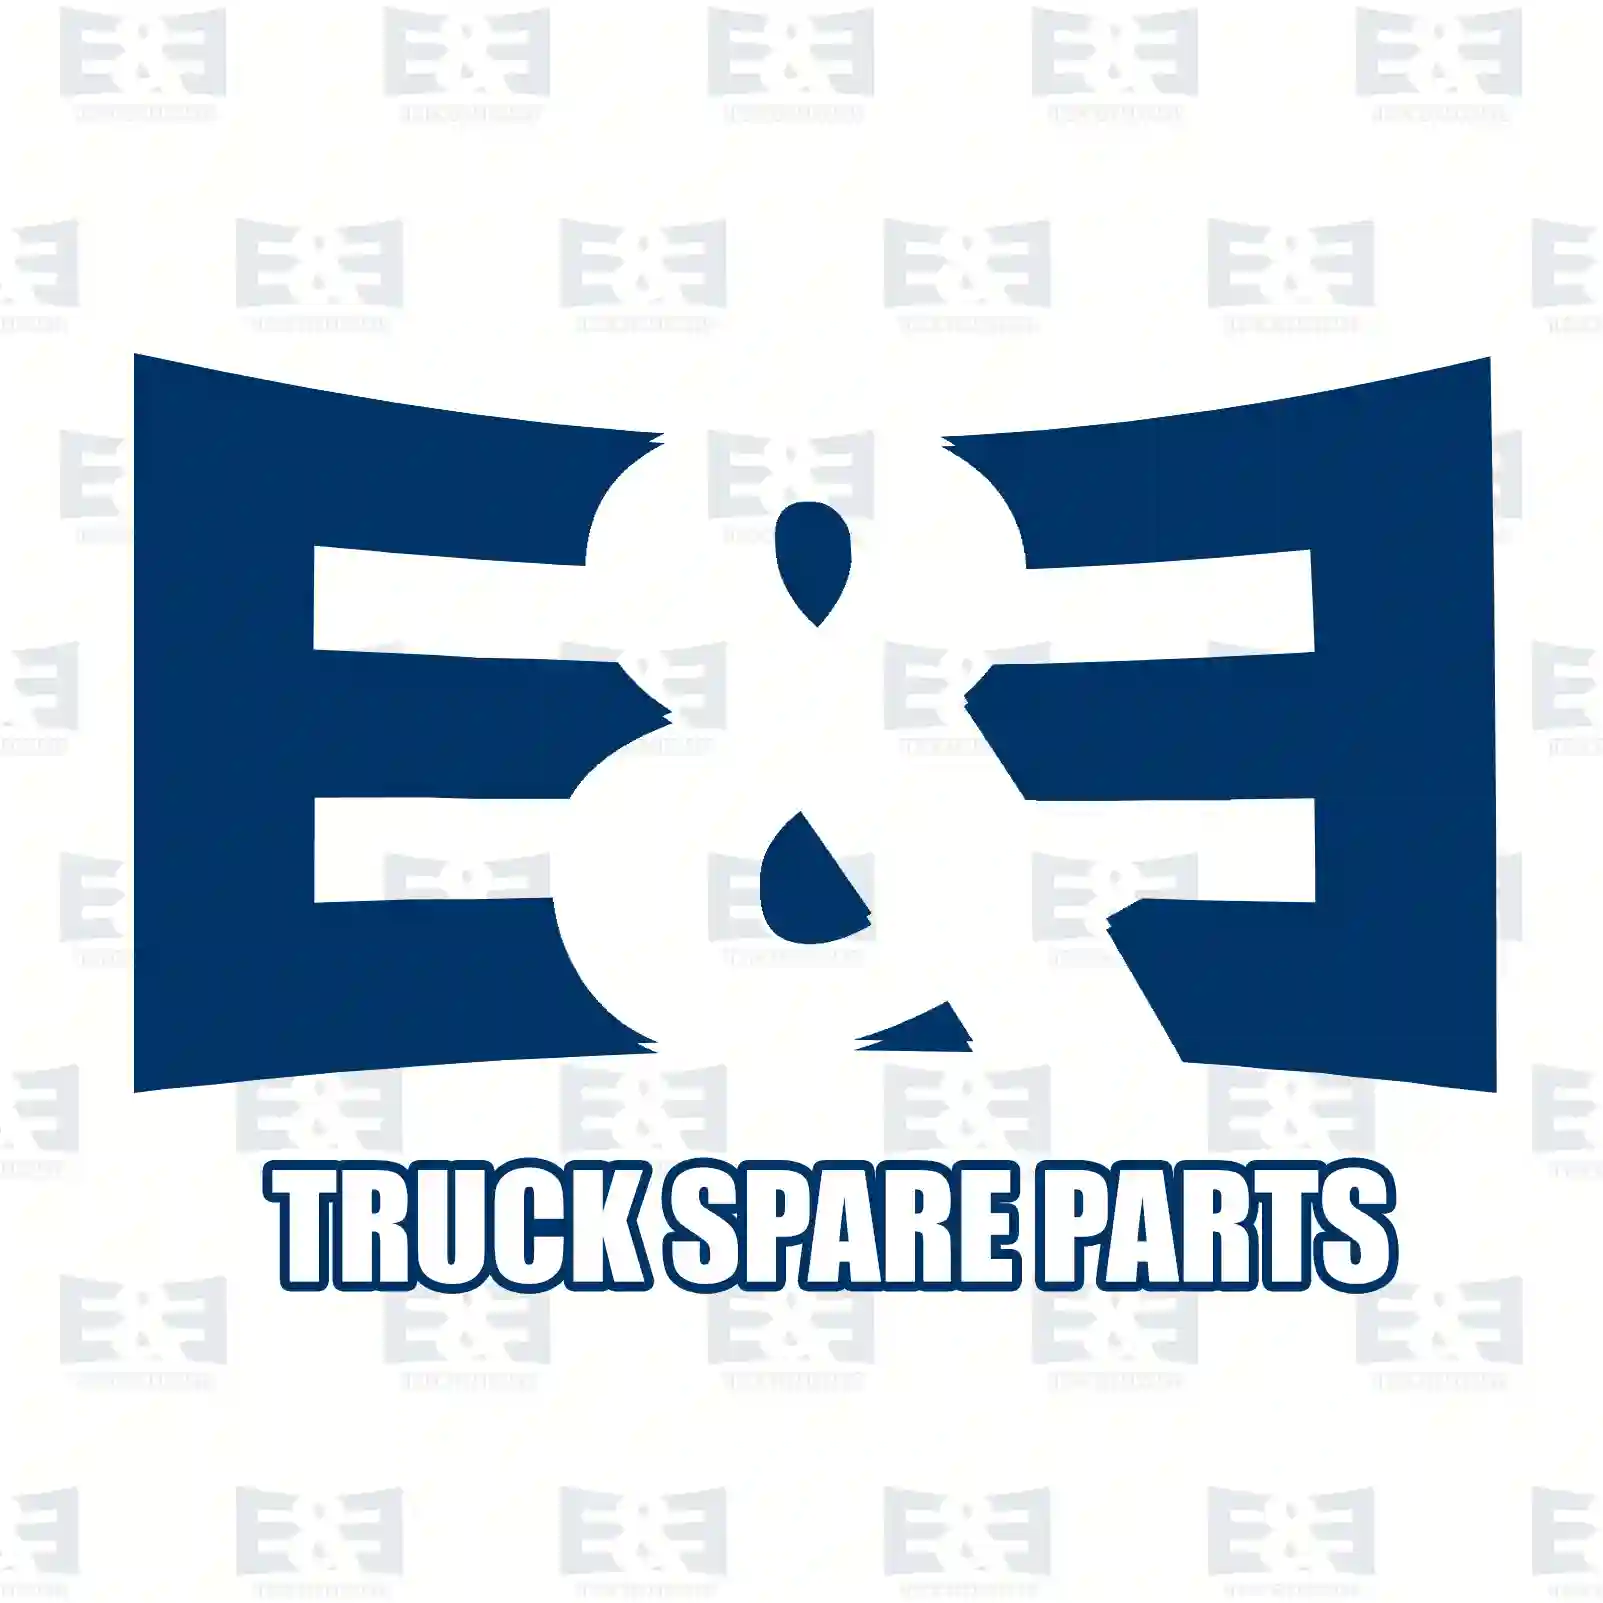 Air filter, 2E2204510, 70320440, ZG00818-0008, ||  2E2204510 E&E Truck Spare Parts | Truck Spare Parts, Auotomotive Spare Parts Air filter, 2E2204510, 70320440, ZG00818-0008, ||  2E2204510 E&E Truck Spare Parts | Truck Spare Parts, Auotomotive Spare Parts